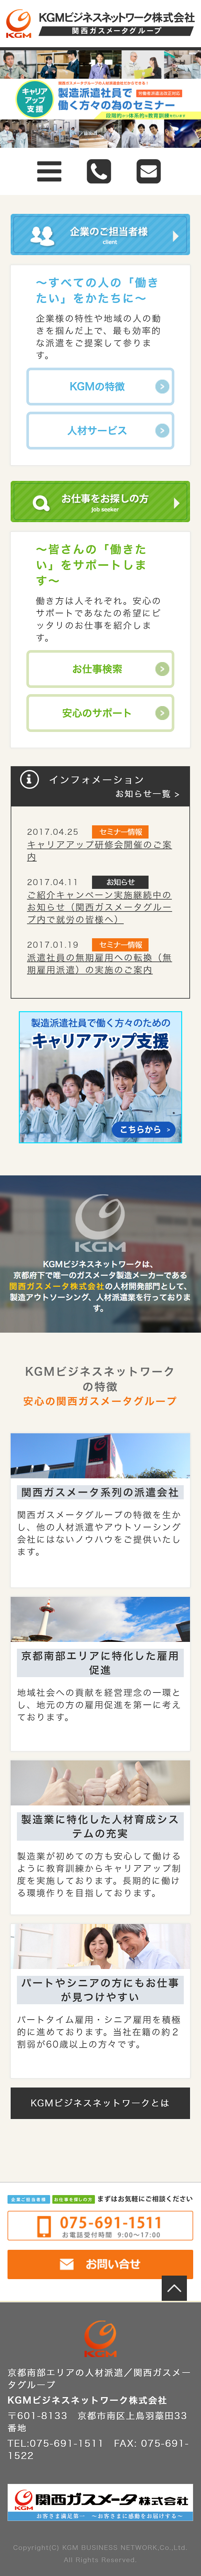 KGMビジネスネットワーク様サイト